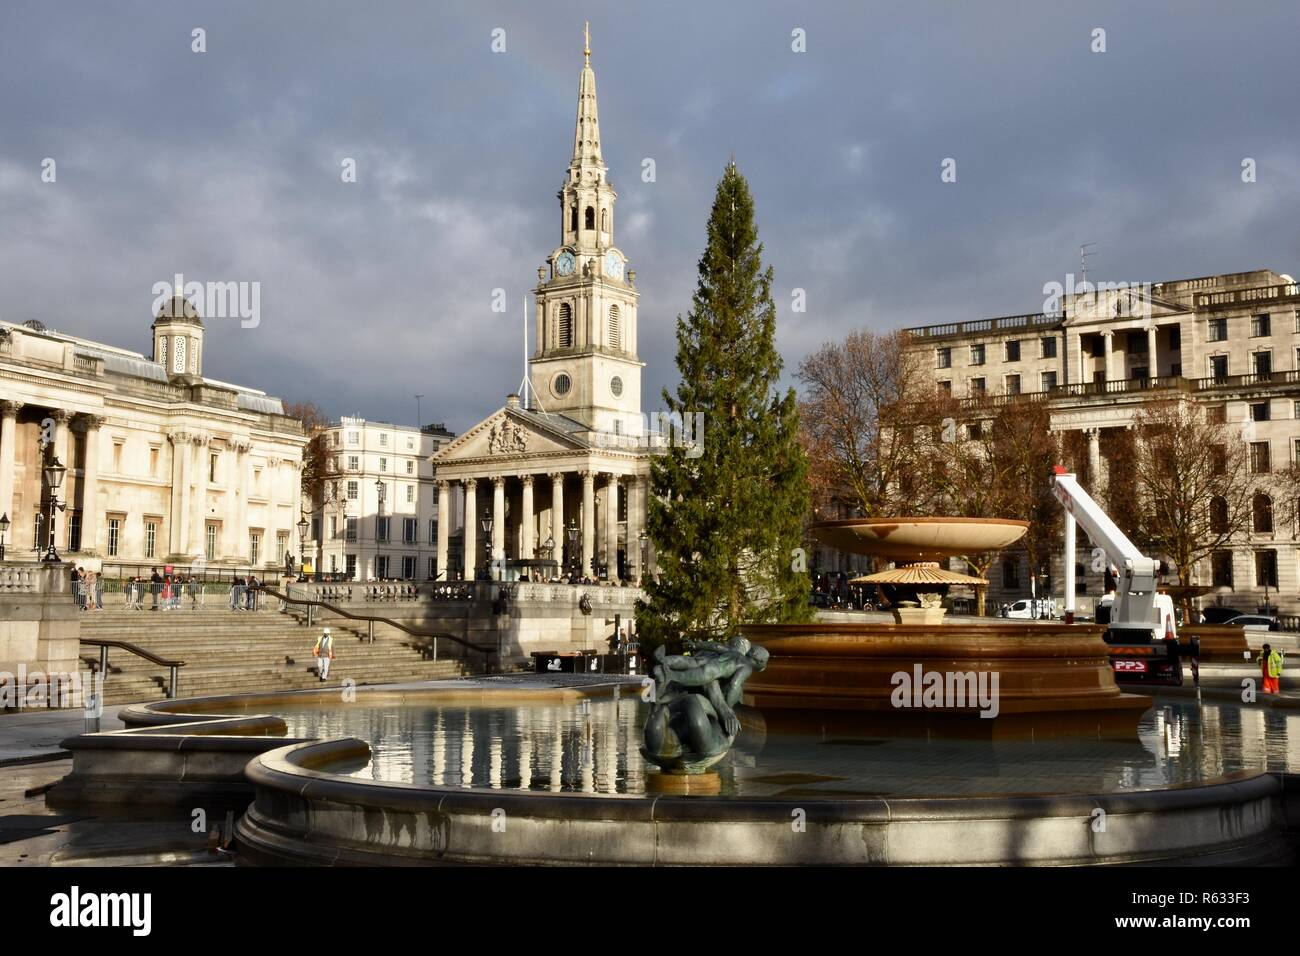 Londres, Royaume-Uni. 3 Décembre, 2018. L'arbre de Noël de Trafalgar Square a été érigée sur la place aujourd'hui. Un don annuel à partir de la ville d'Oslo en signe de gratitude pour l'appui britannique à la Norvège pendant la Seconde Guerre mondiale.Trafalgar Square, London.UK Crédit : michael melia/Alamy Live News Banque D'Images